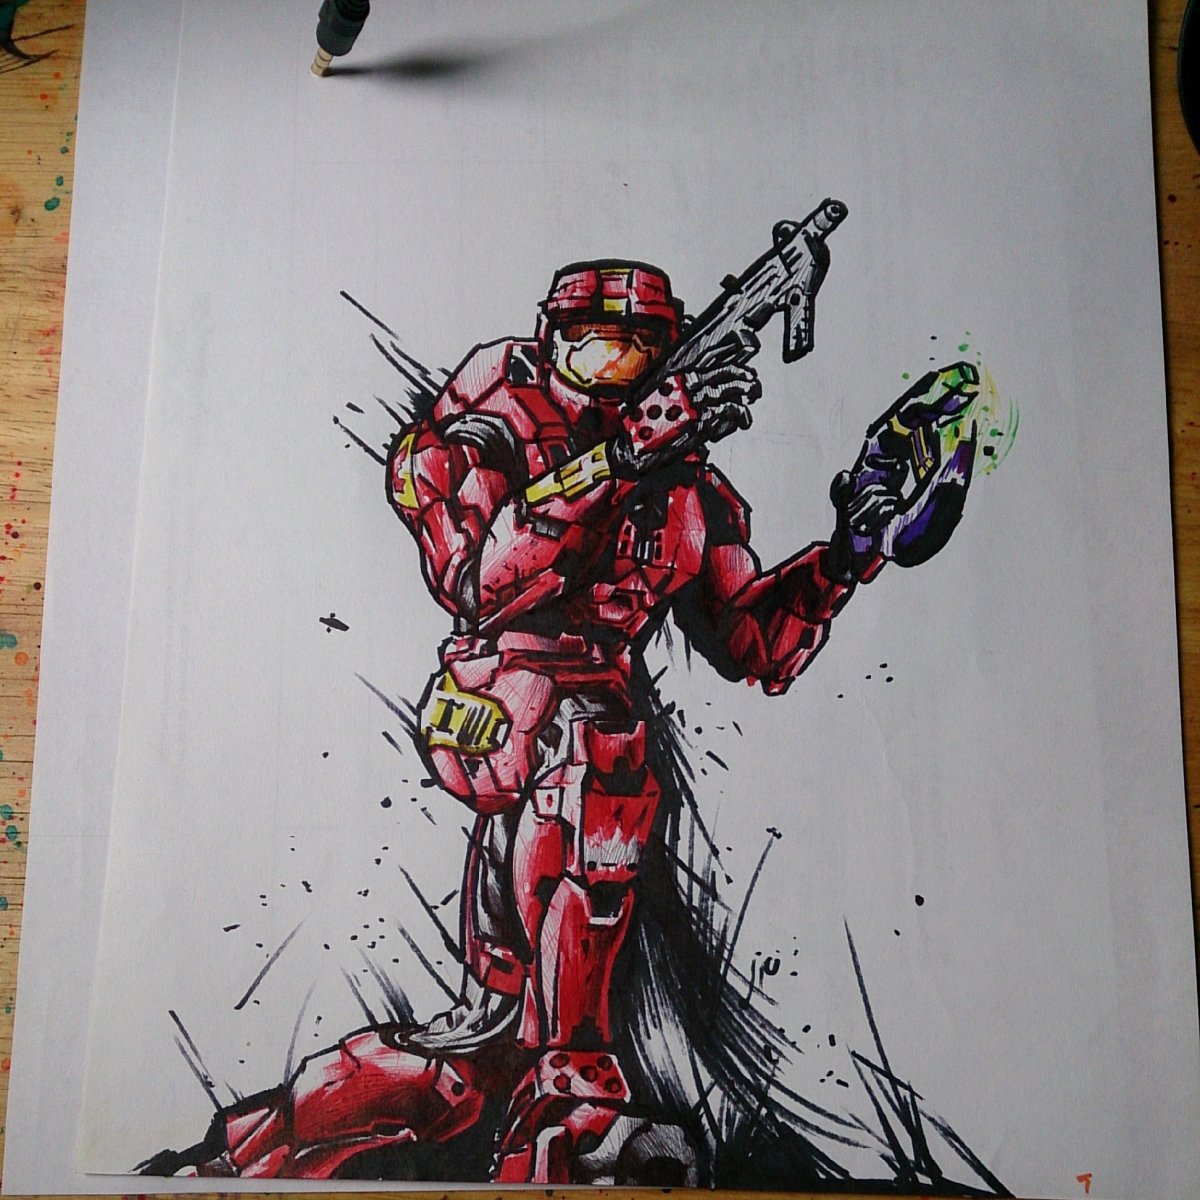 Halo 2 drawing ups